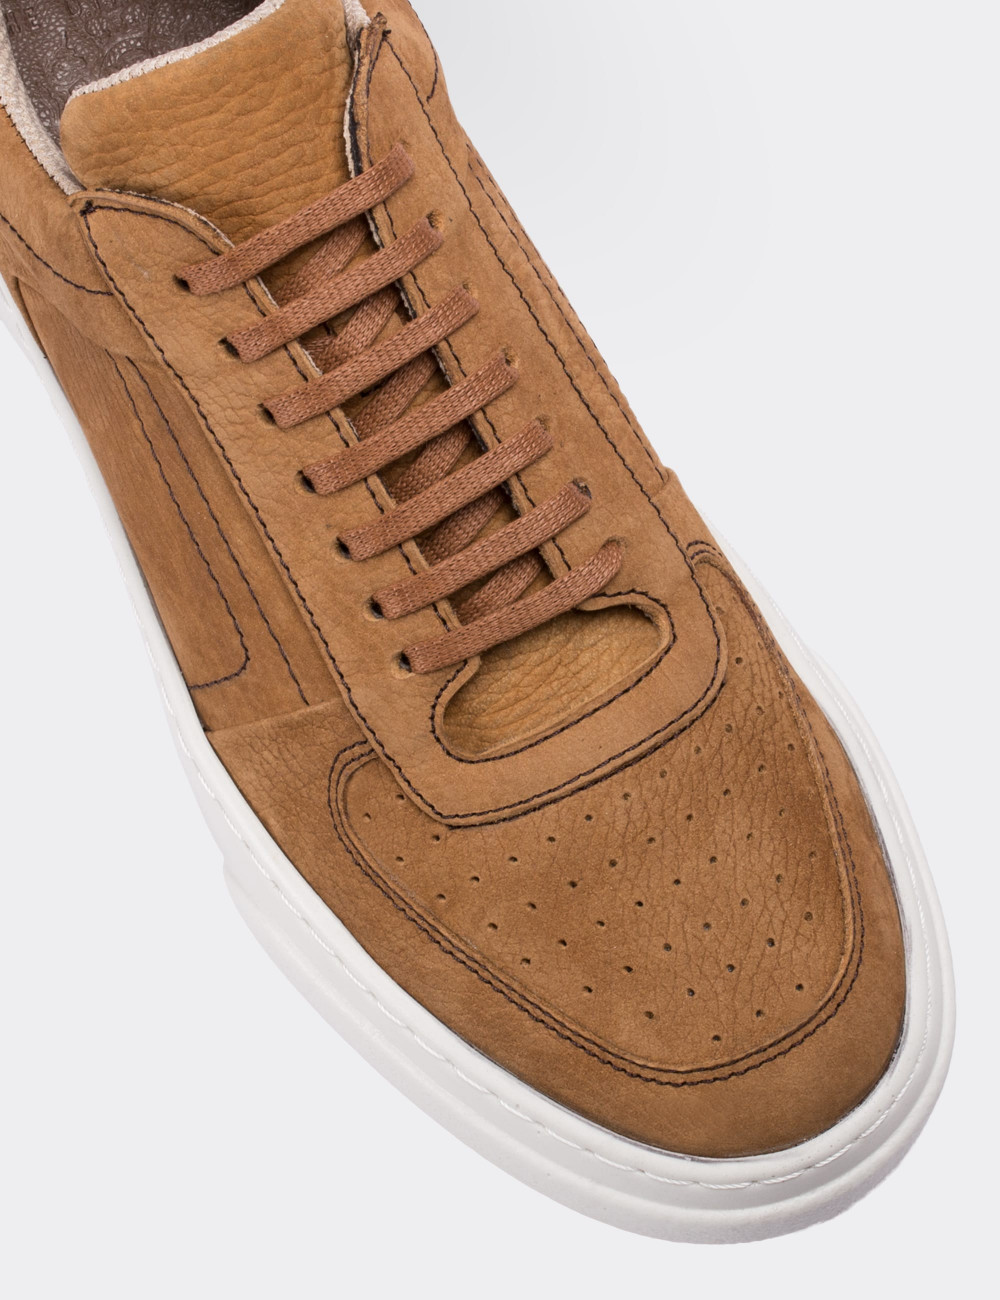 Tan Nubuck Leather Sneakers - 01716MTBAP01